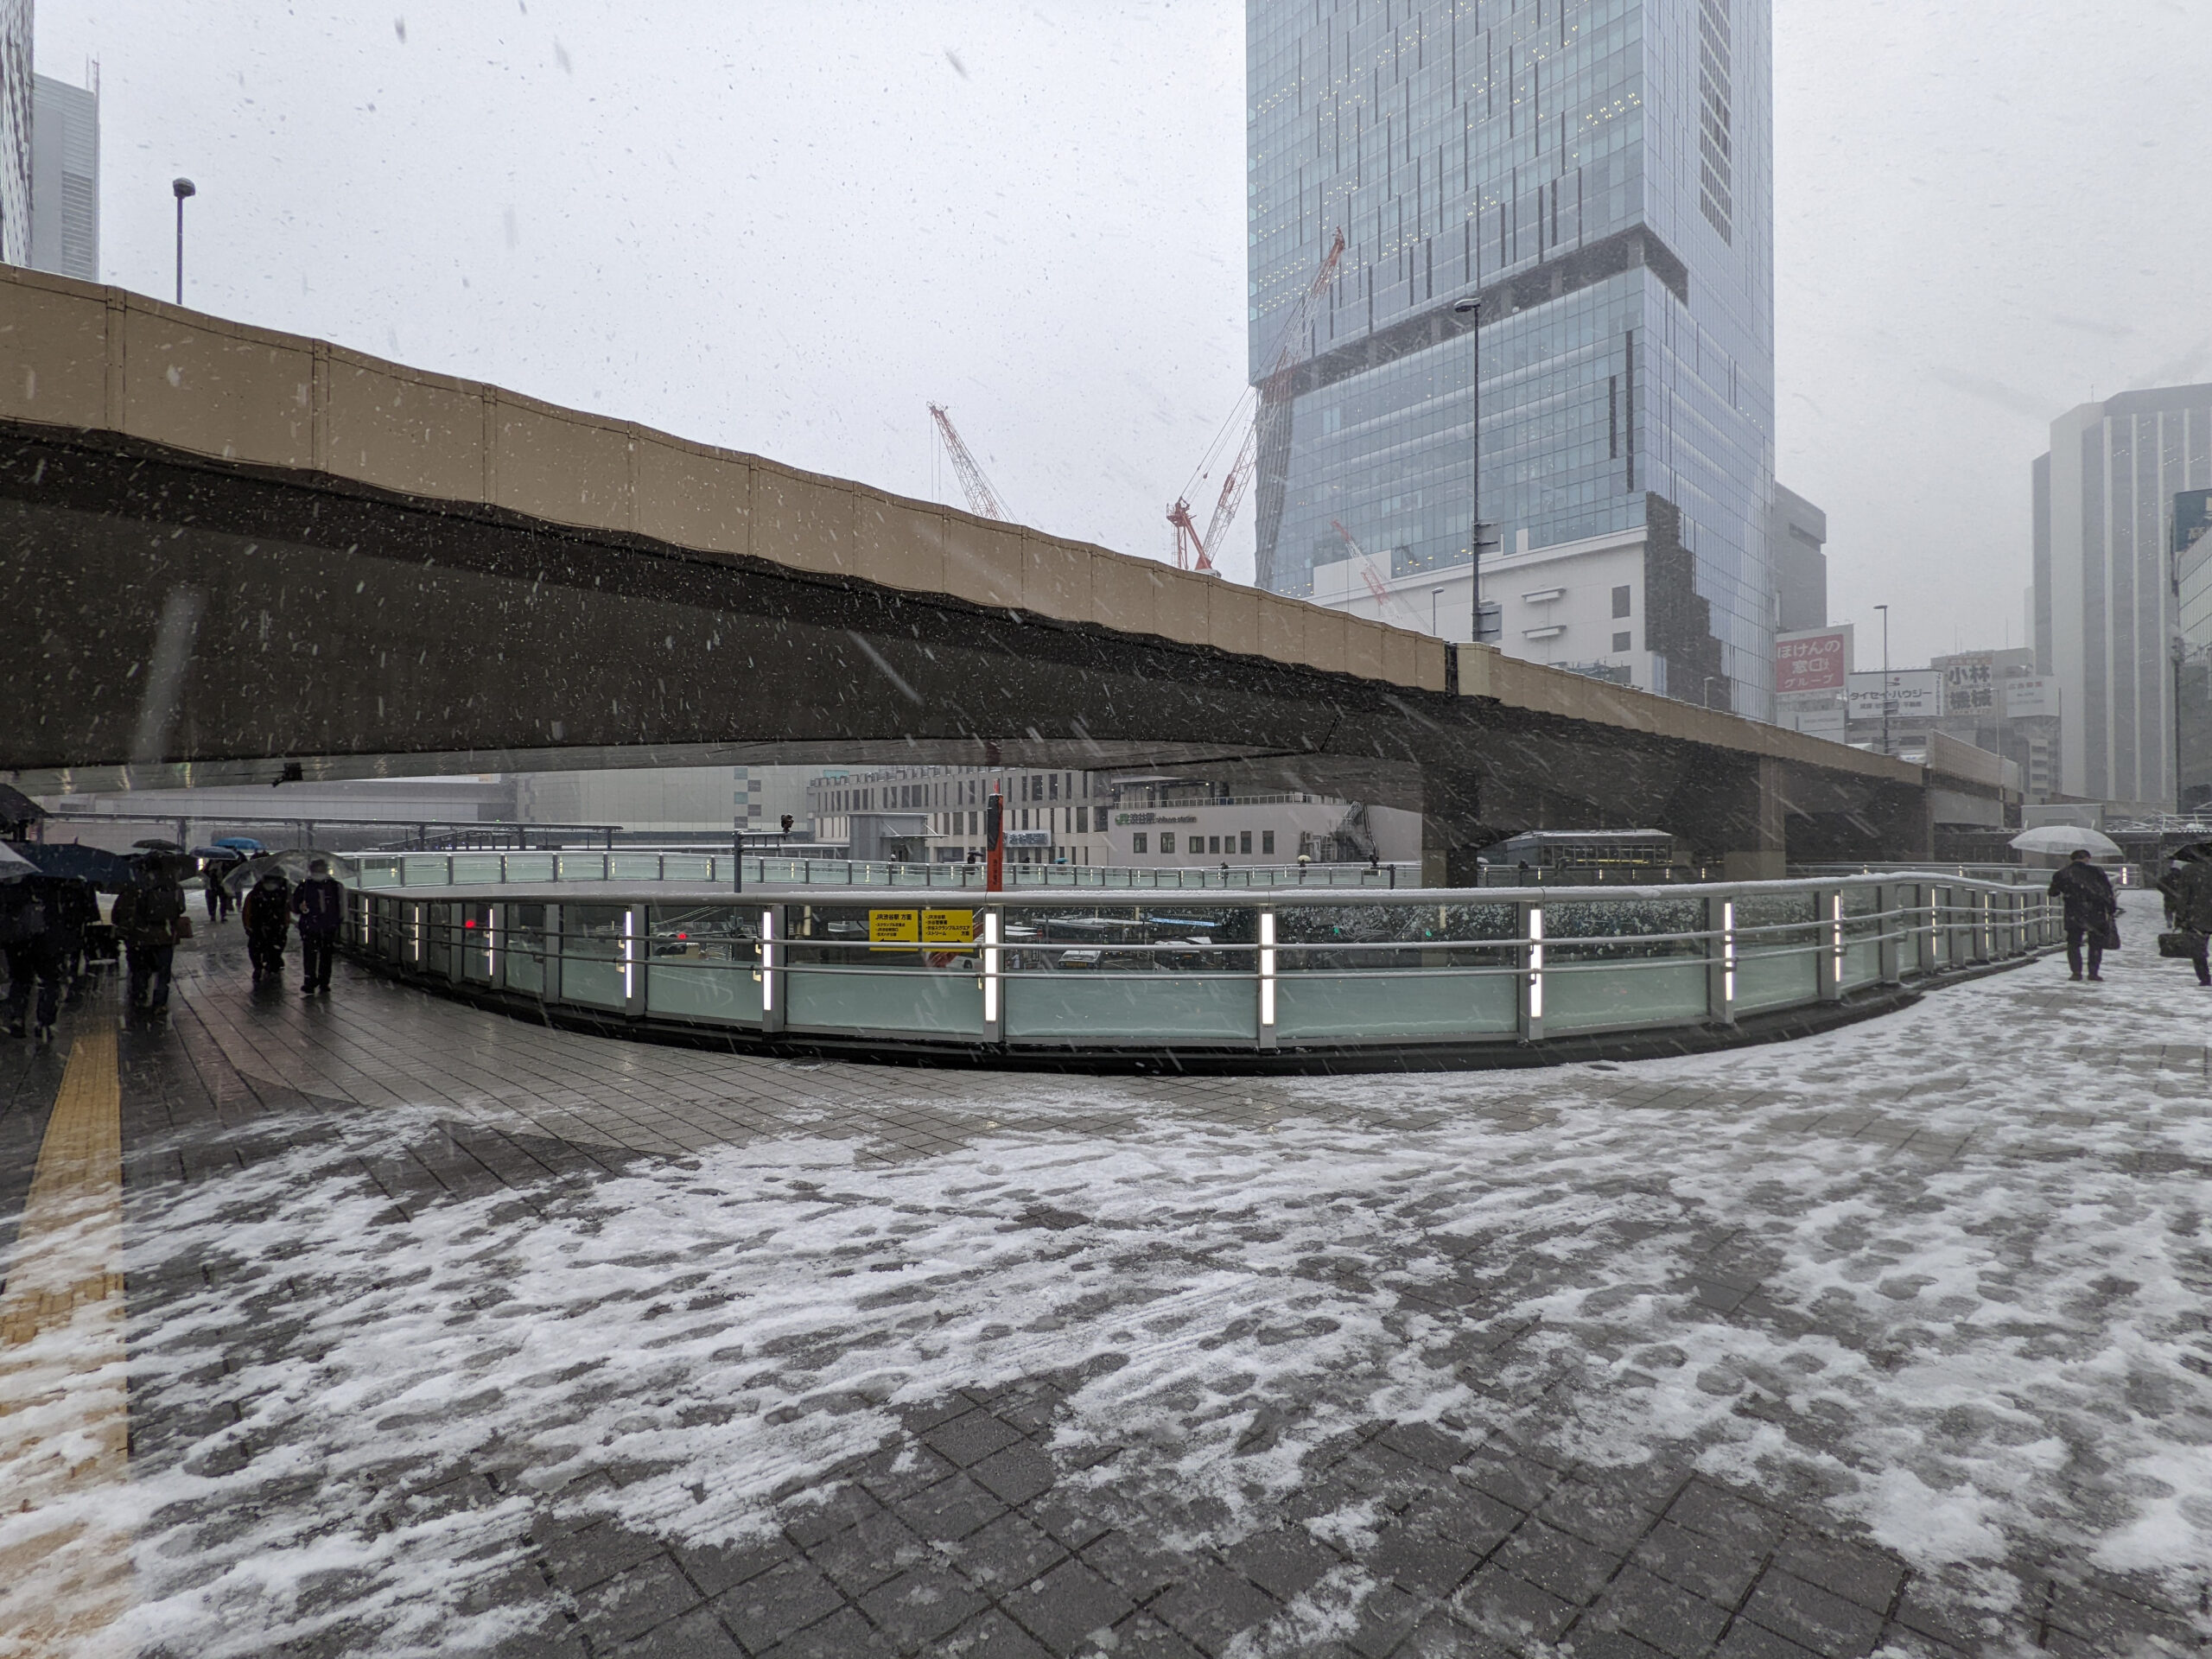 雪の日の渋谷 渋谷駅西口歩道橋から見える首都高